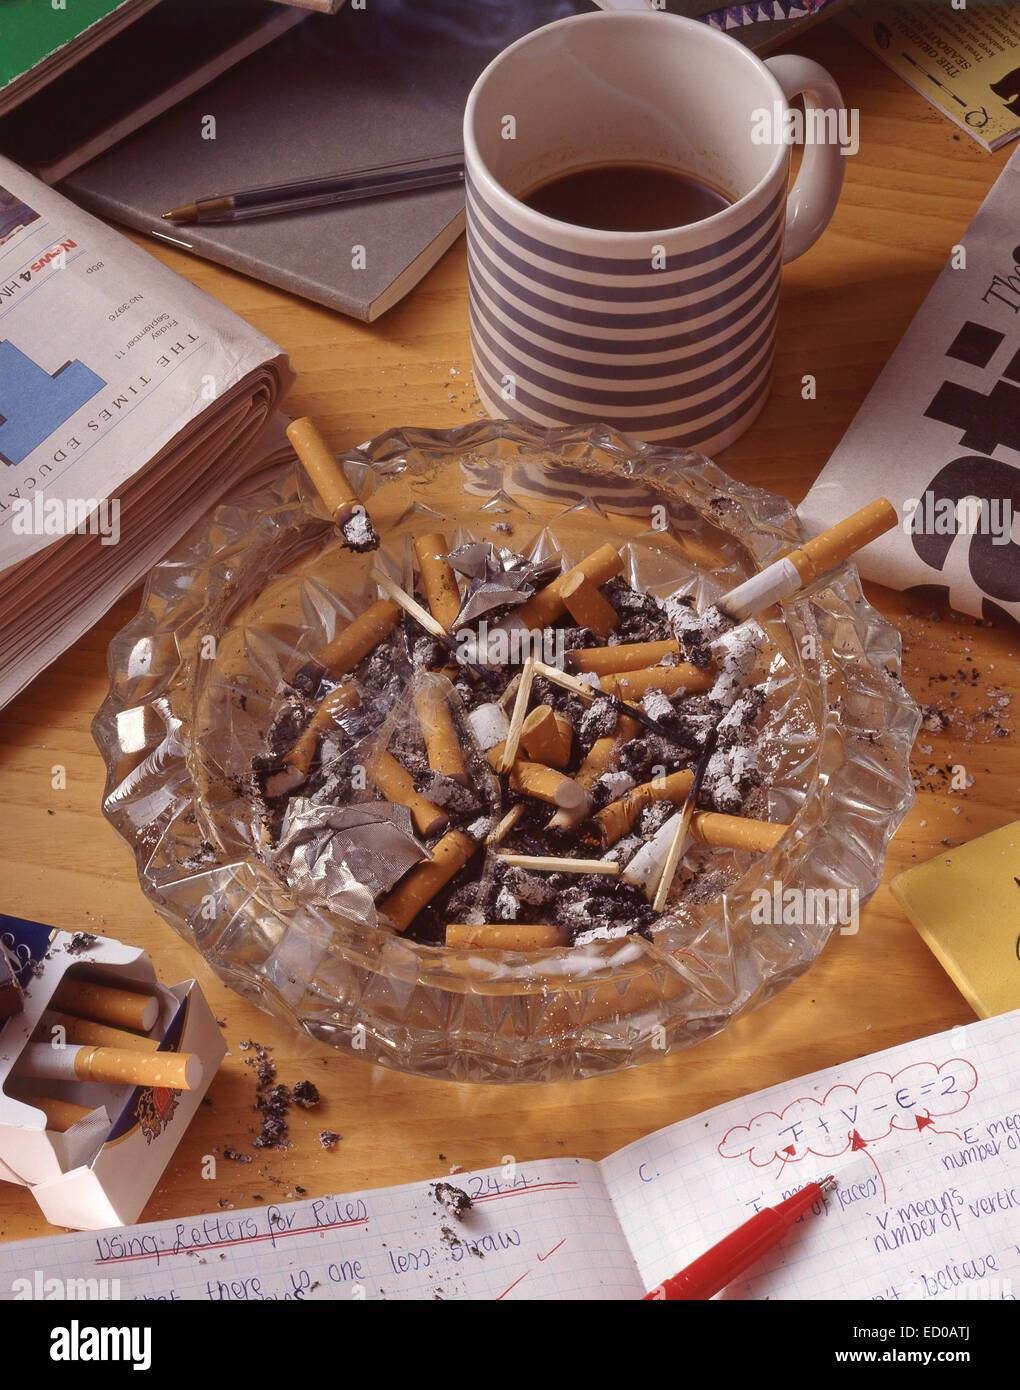 Escritorio de trabajo mostrando el cenicero lleno de colillas de cigarrillos Foto de stock